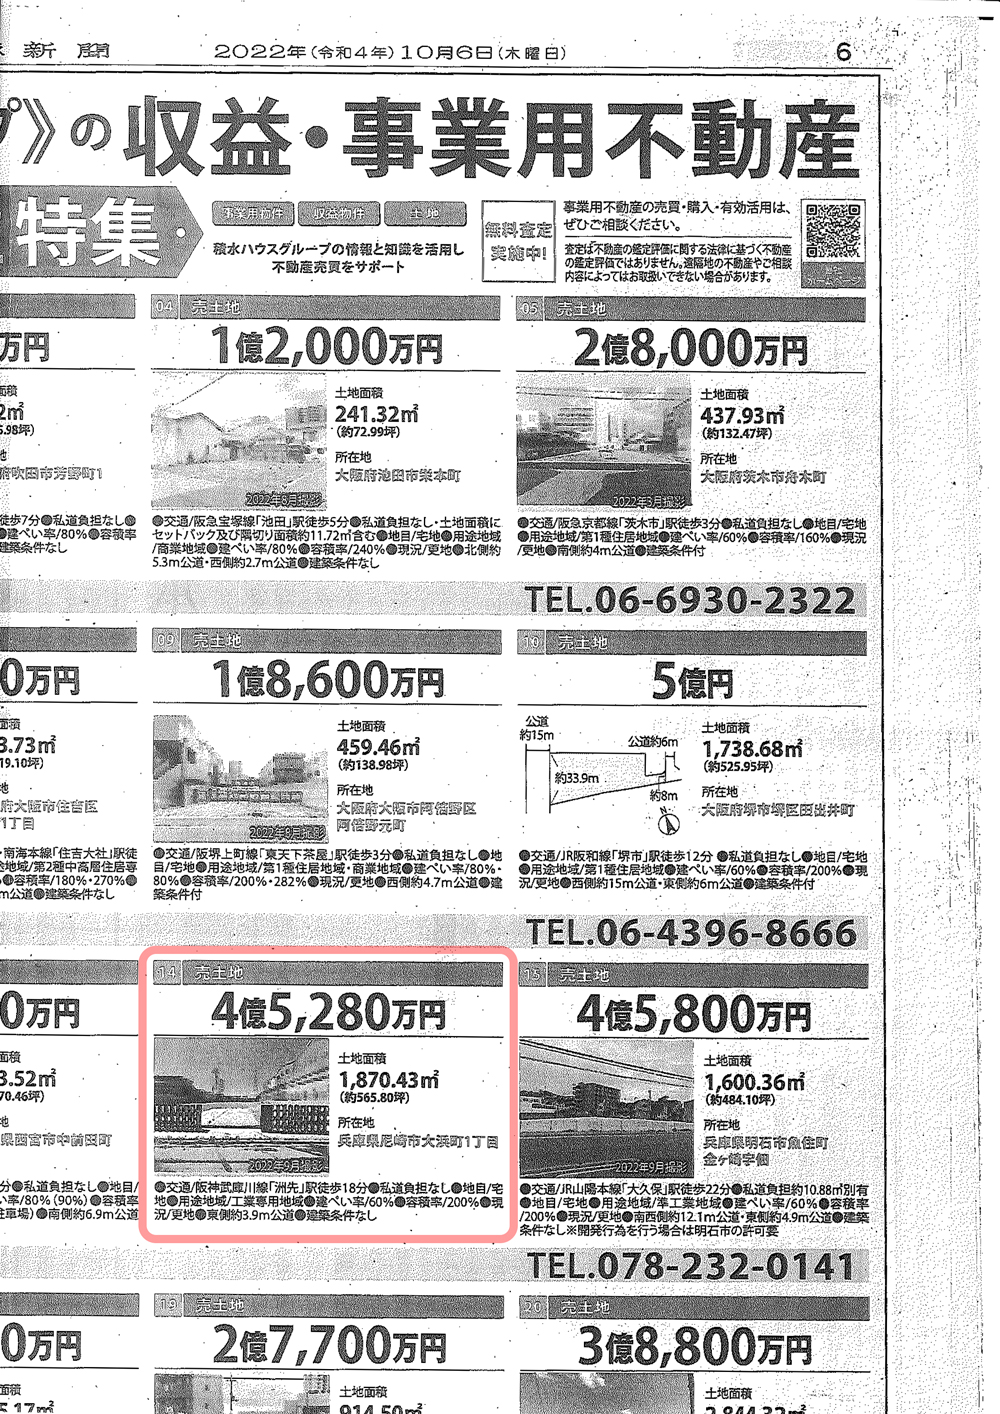 近酸運輸の跡地が掲載されている新聞広告（写真の赤枠内、兵庫県尼崎市大浜町1丁目）。